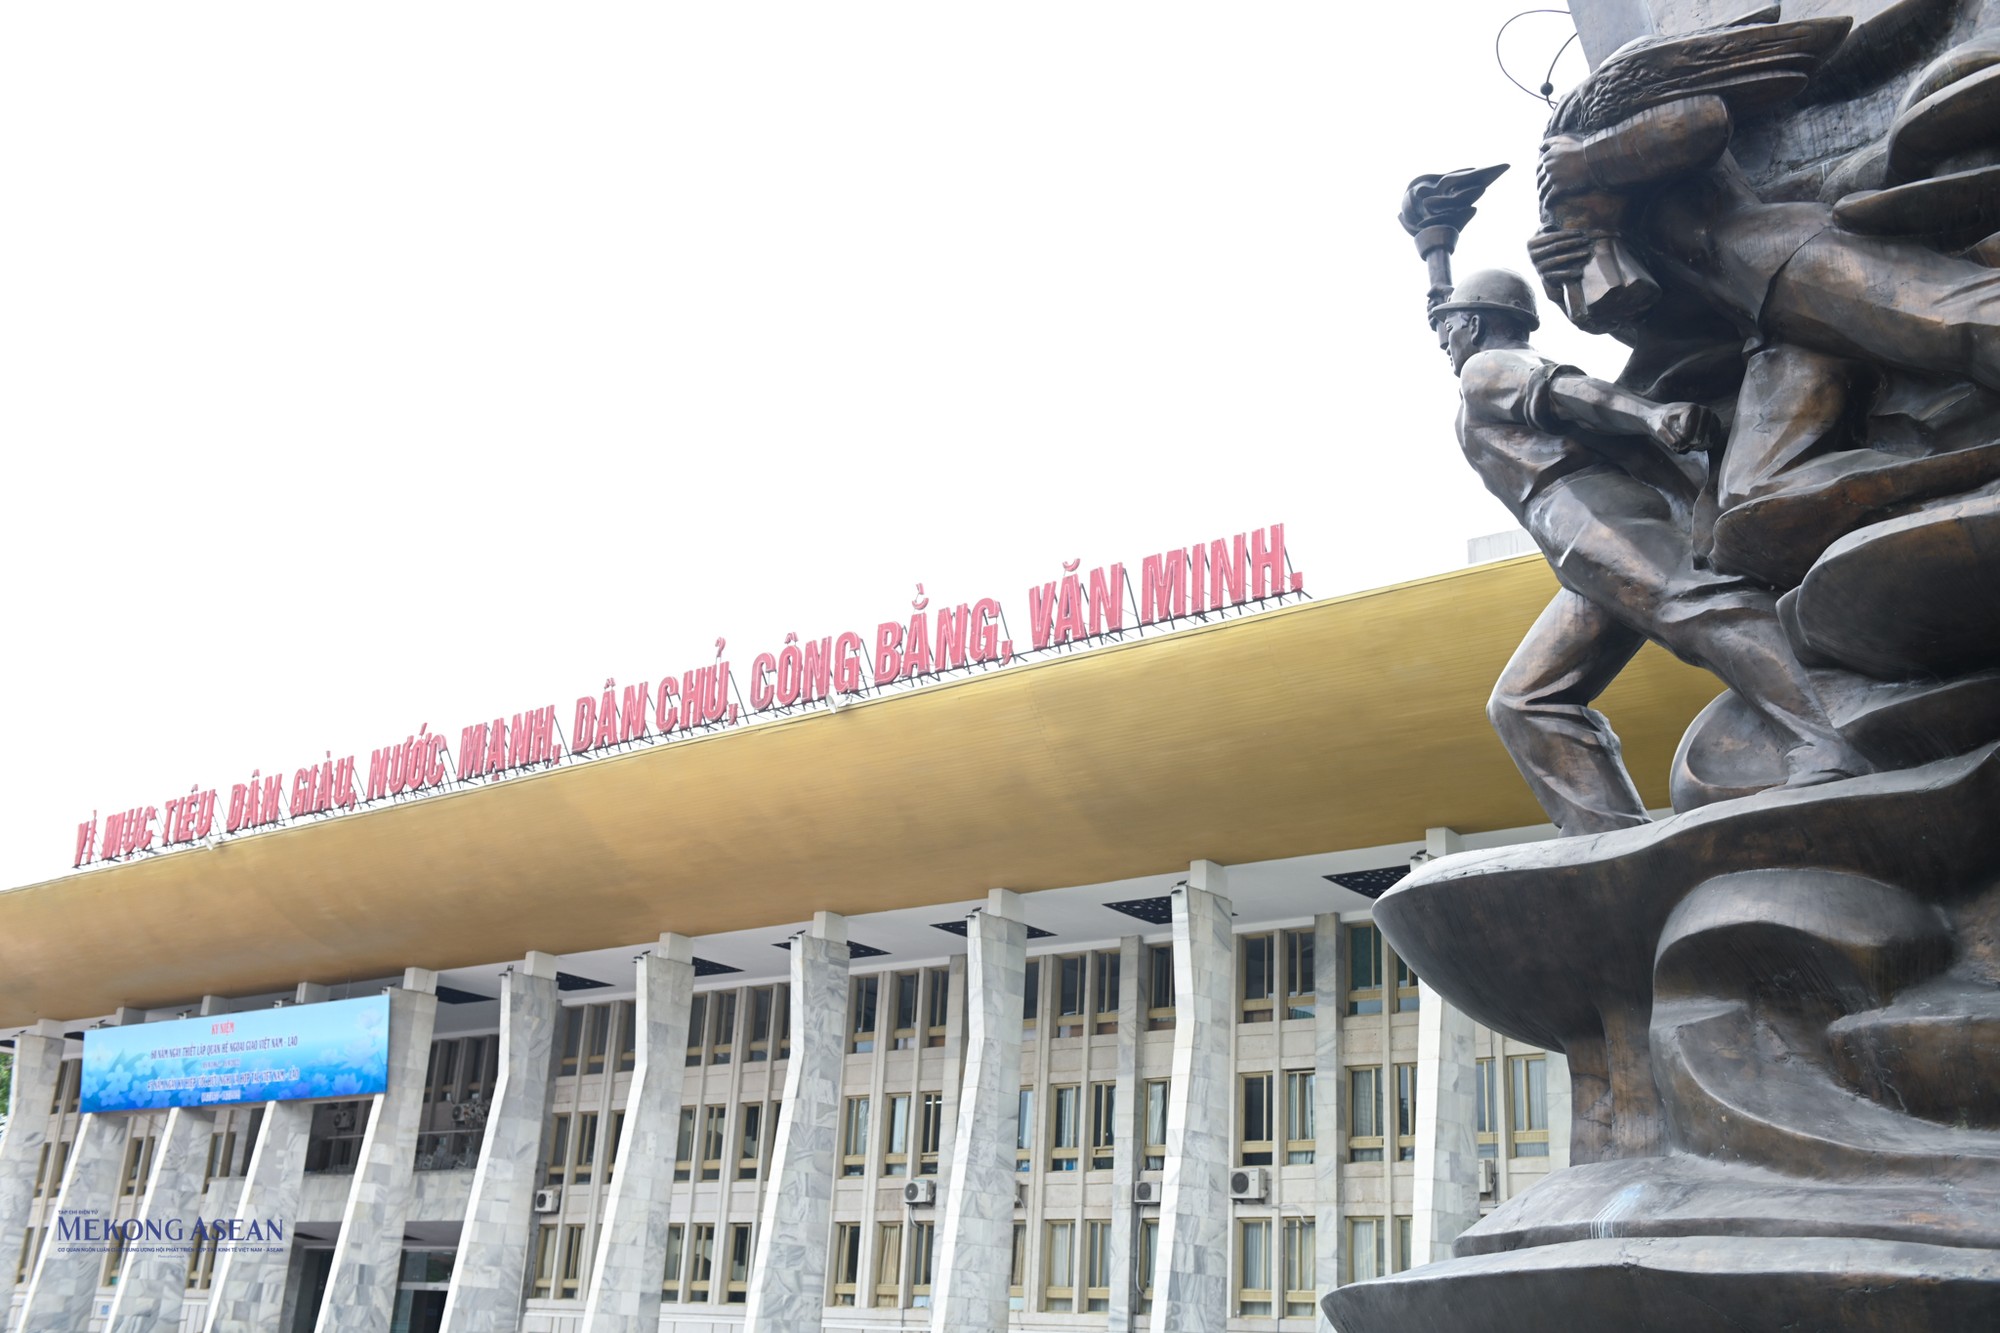 Việc xây dựng tượng đài Công nhân Việt Nam nhằm giáo dục truyền thống đấu tranh cách mạng, tính tiên phong của giai cấp công nhân Việt Nam trong sự nghiệp xây dựng và bảo vệ Tổ quốc.